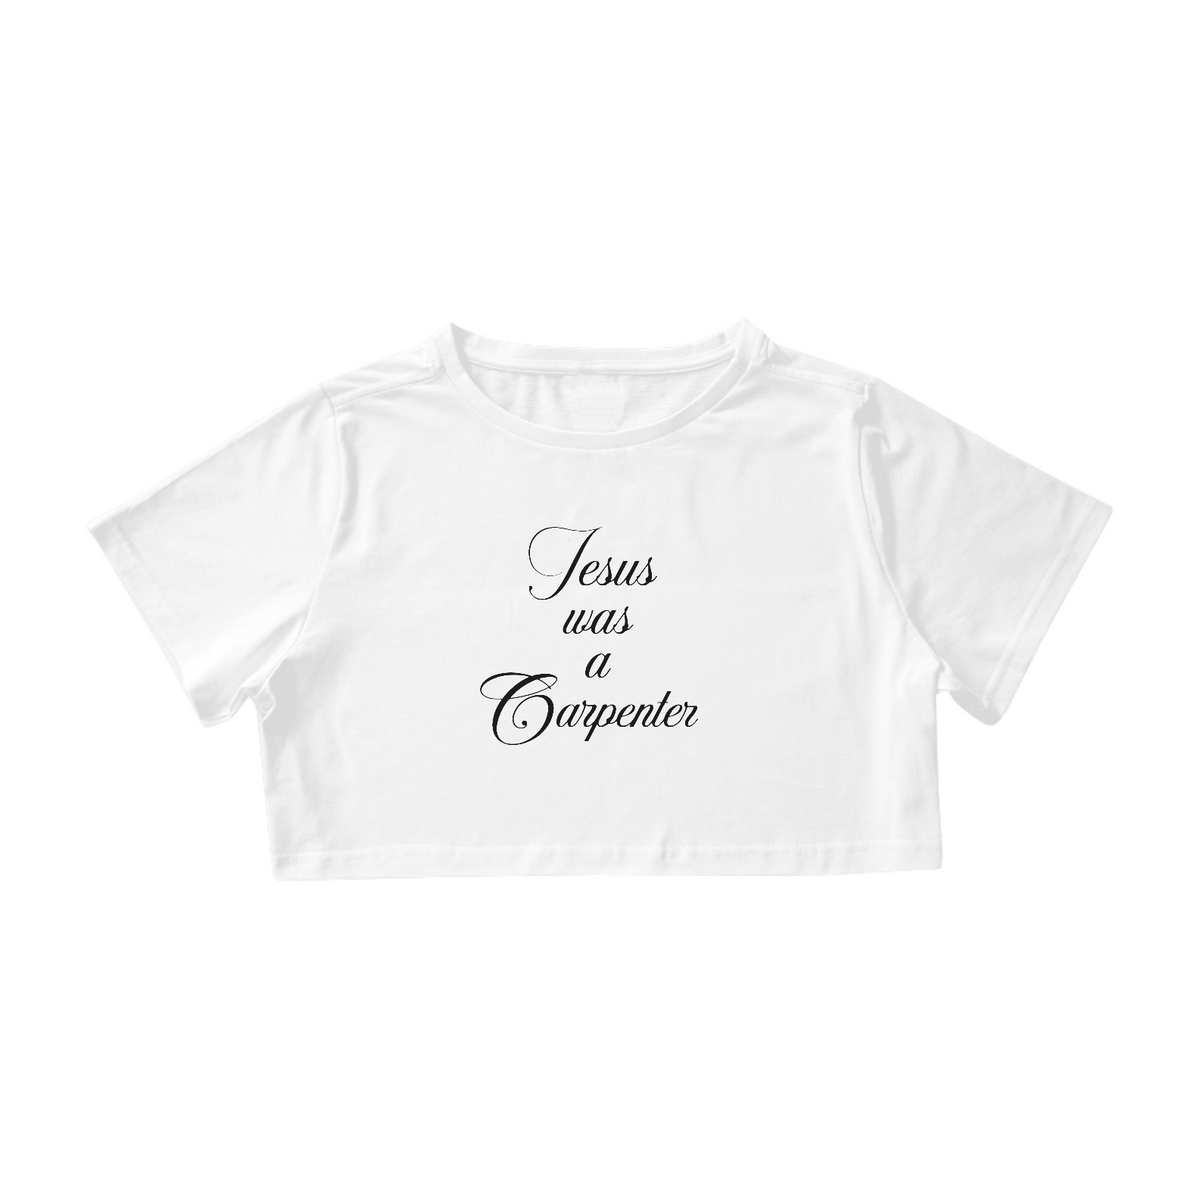 Nome do produto: CROPPED - JESUS WAS A CARPENTER